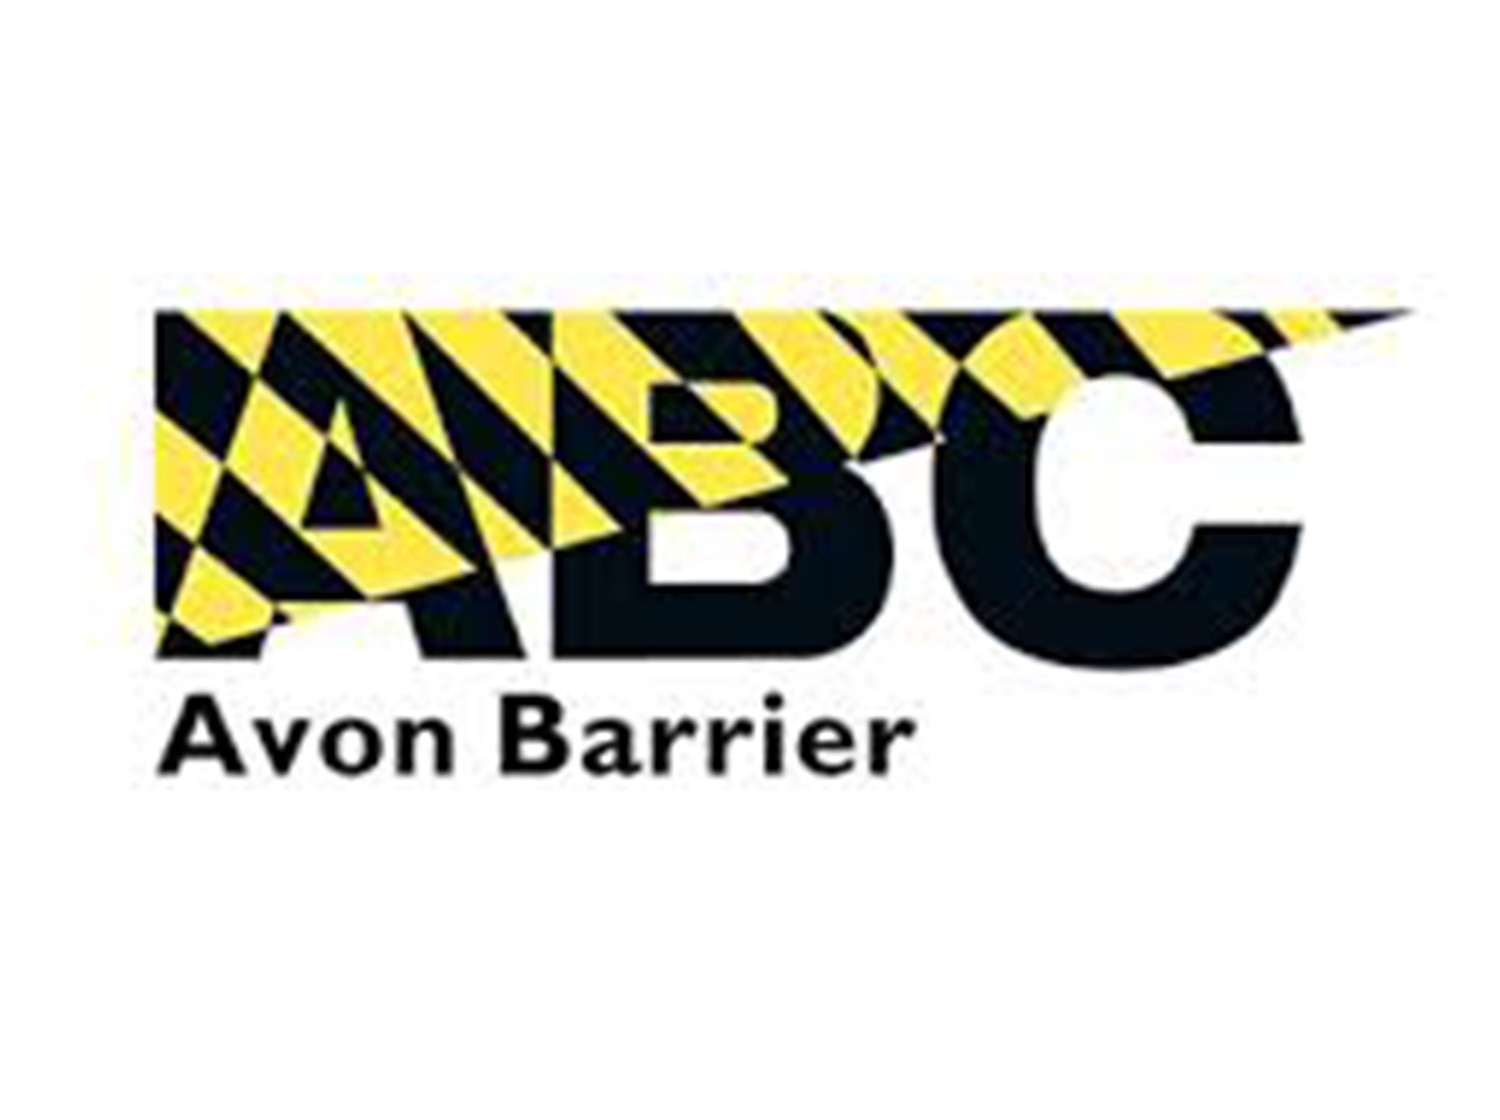 Avon barrier pfm client